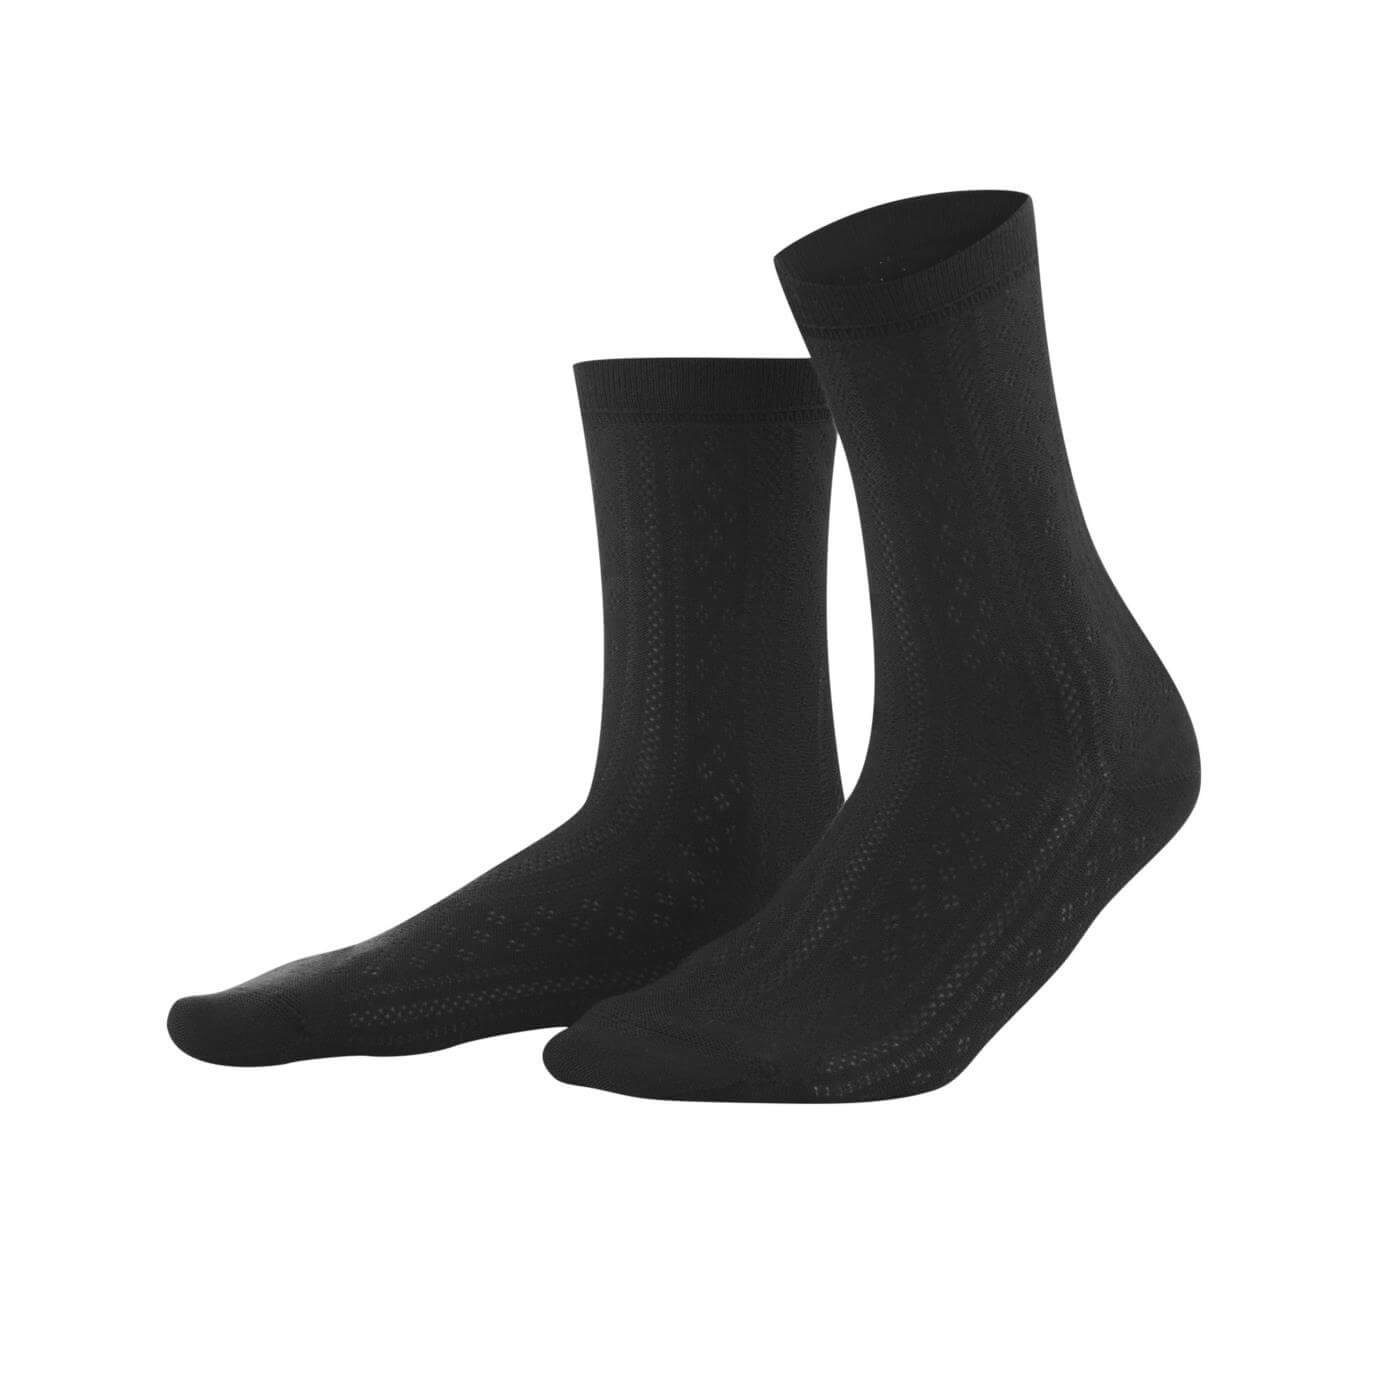 LIVING CRAFTS Socken KATALIN Feiner Strick mit filigranem Ajourmuster Black